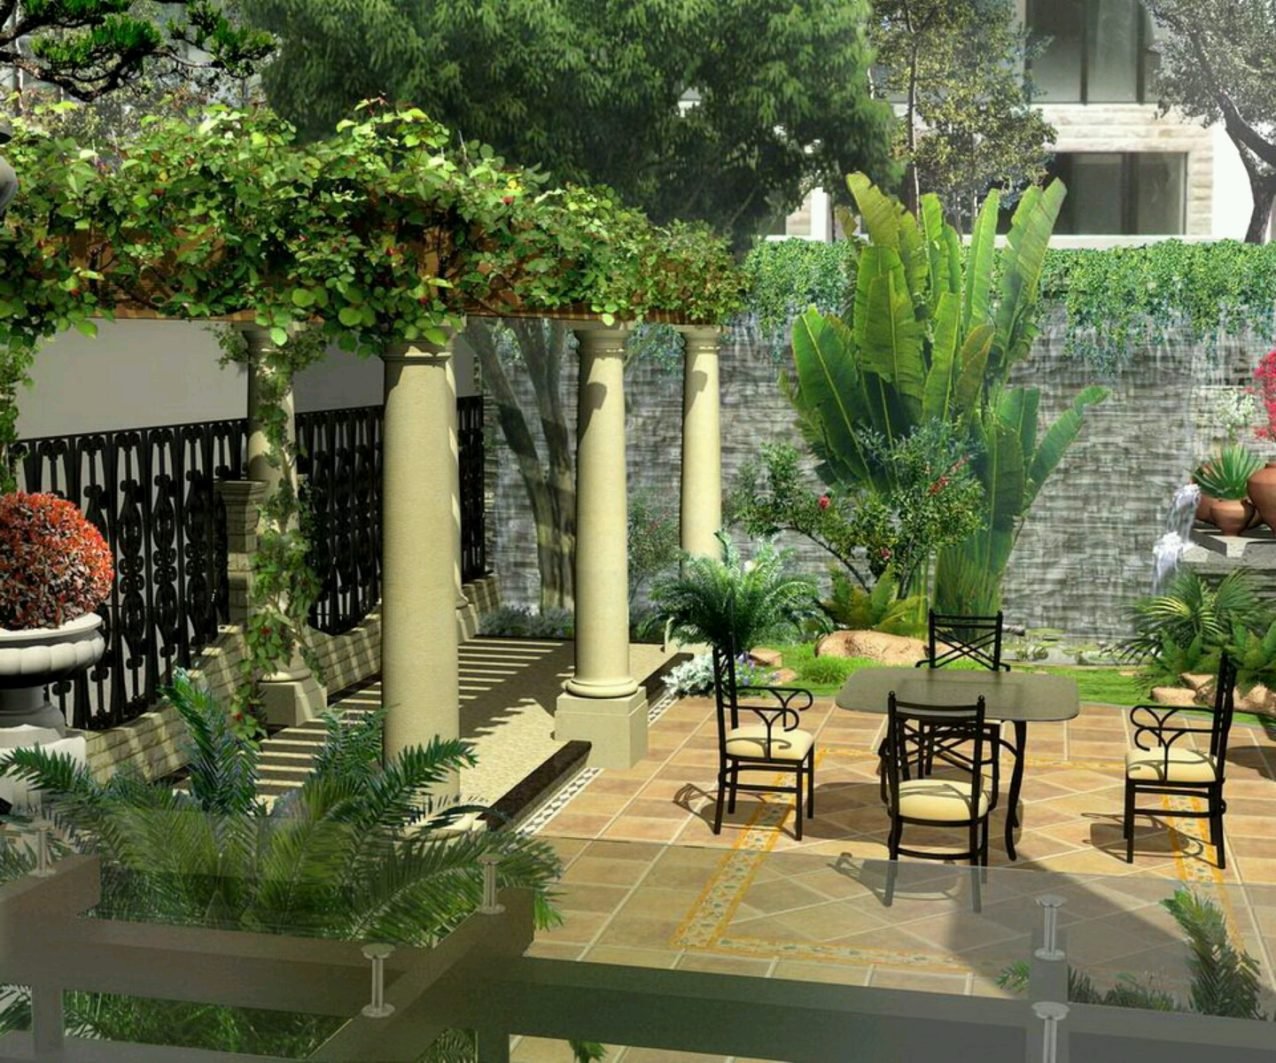 أفكار لتصميم حدائق منزلية صغيرة أنوثة Ounousa موقع الموضة والجمال